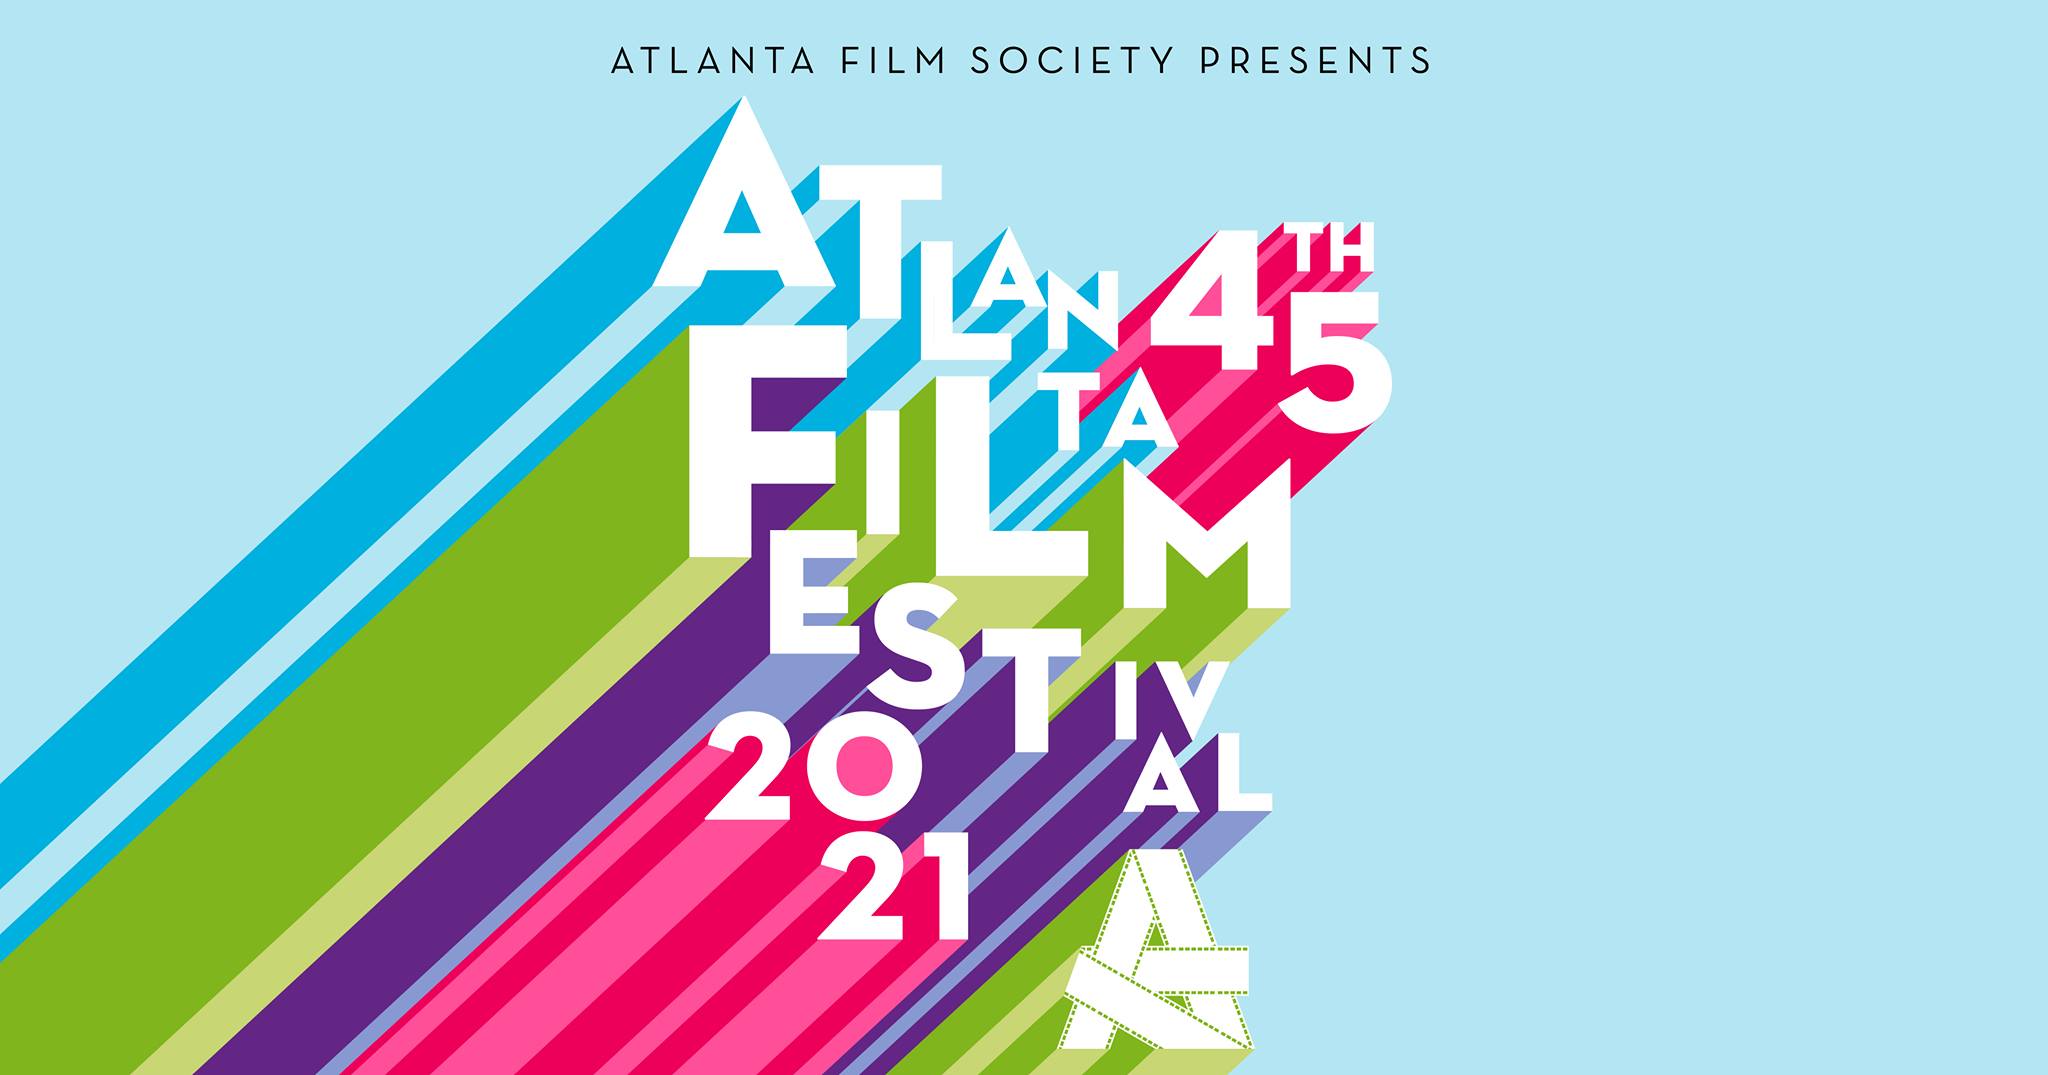 DriveIn Movies Take Over Atlanta Film Festival's Stellar Schedule